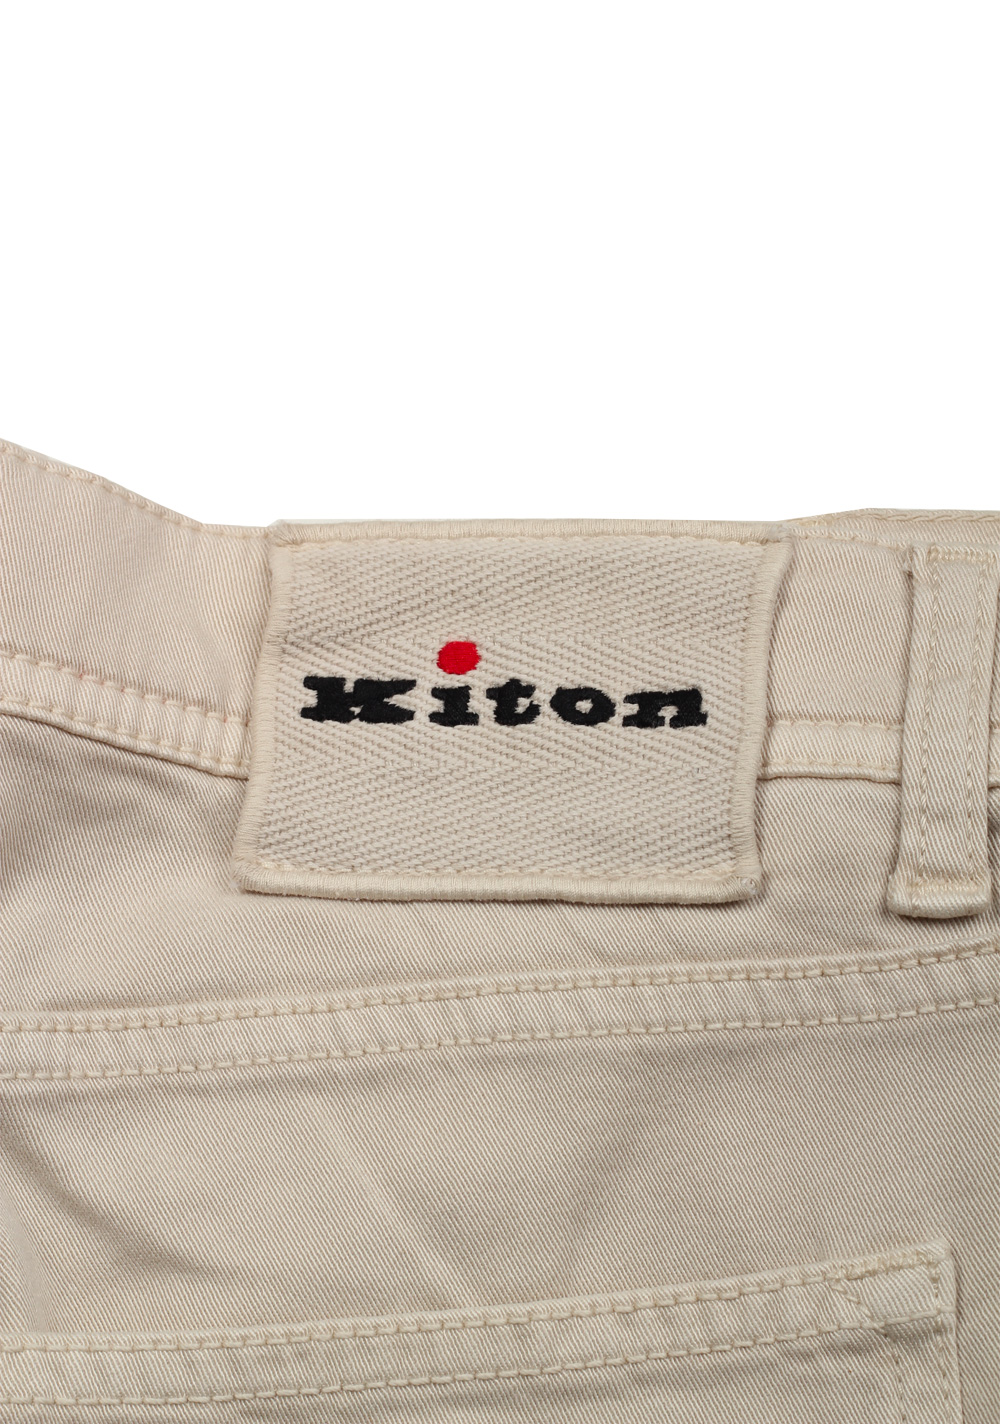 Kiton Beige Jeans Size 50 / 34 U.S. | Costume Limité